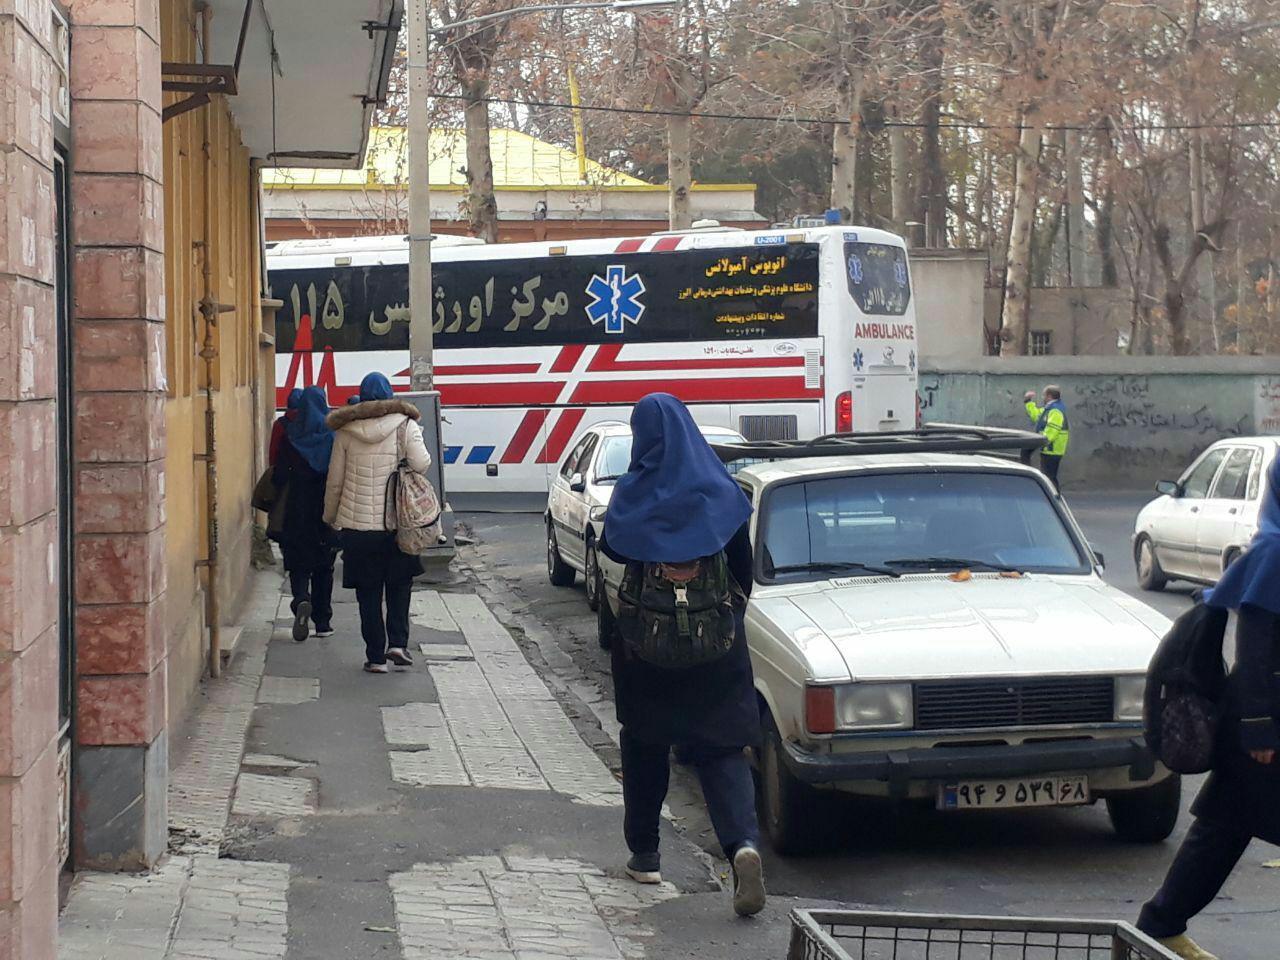 ۱۵ دانش آموز دختر مسموم شده کرجی از بیمارستان مرخص شدند/ علت حادثه باید توسط سازمان آتش نشانی کرج اعلام شود